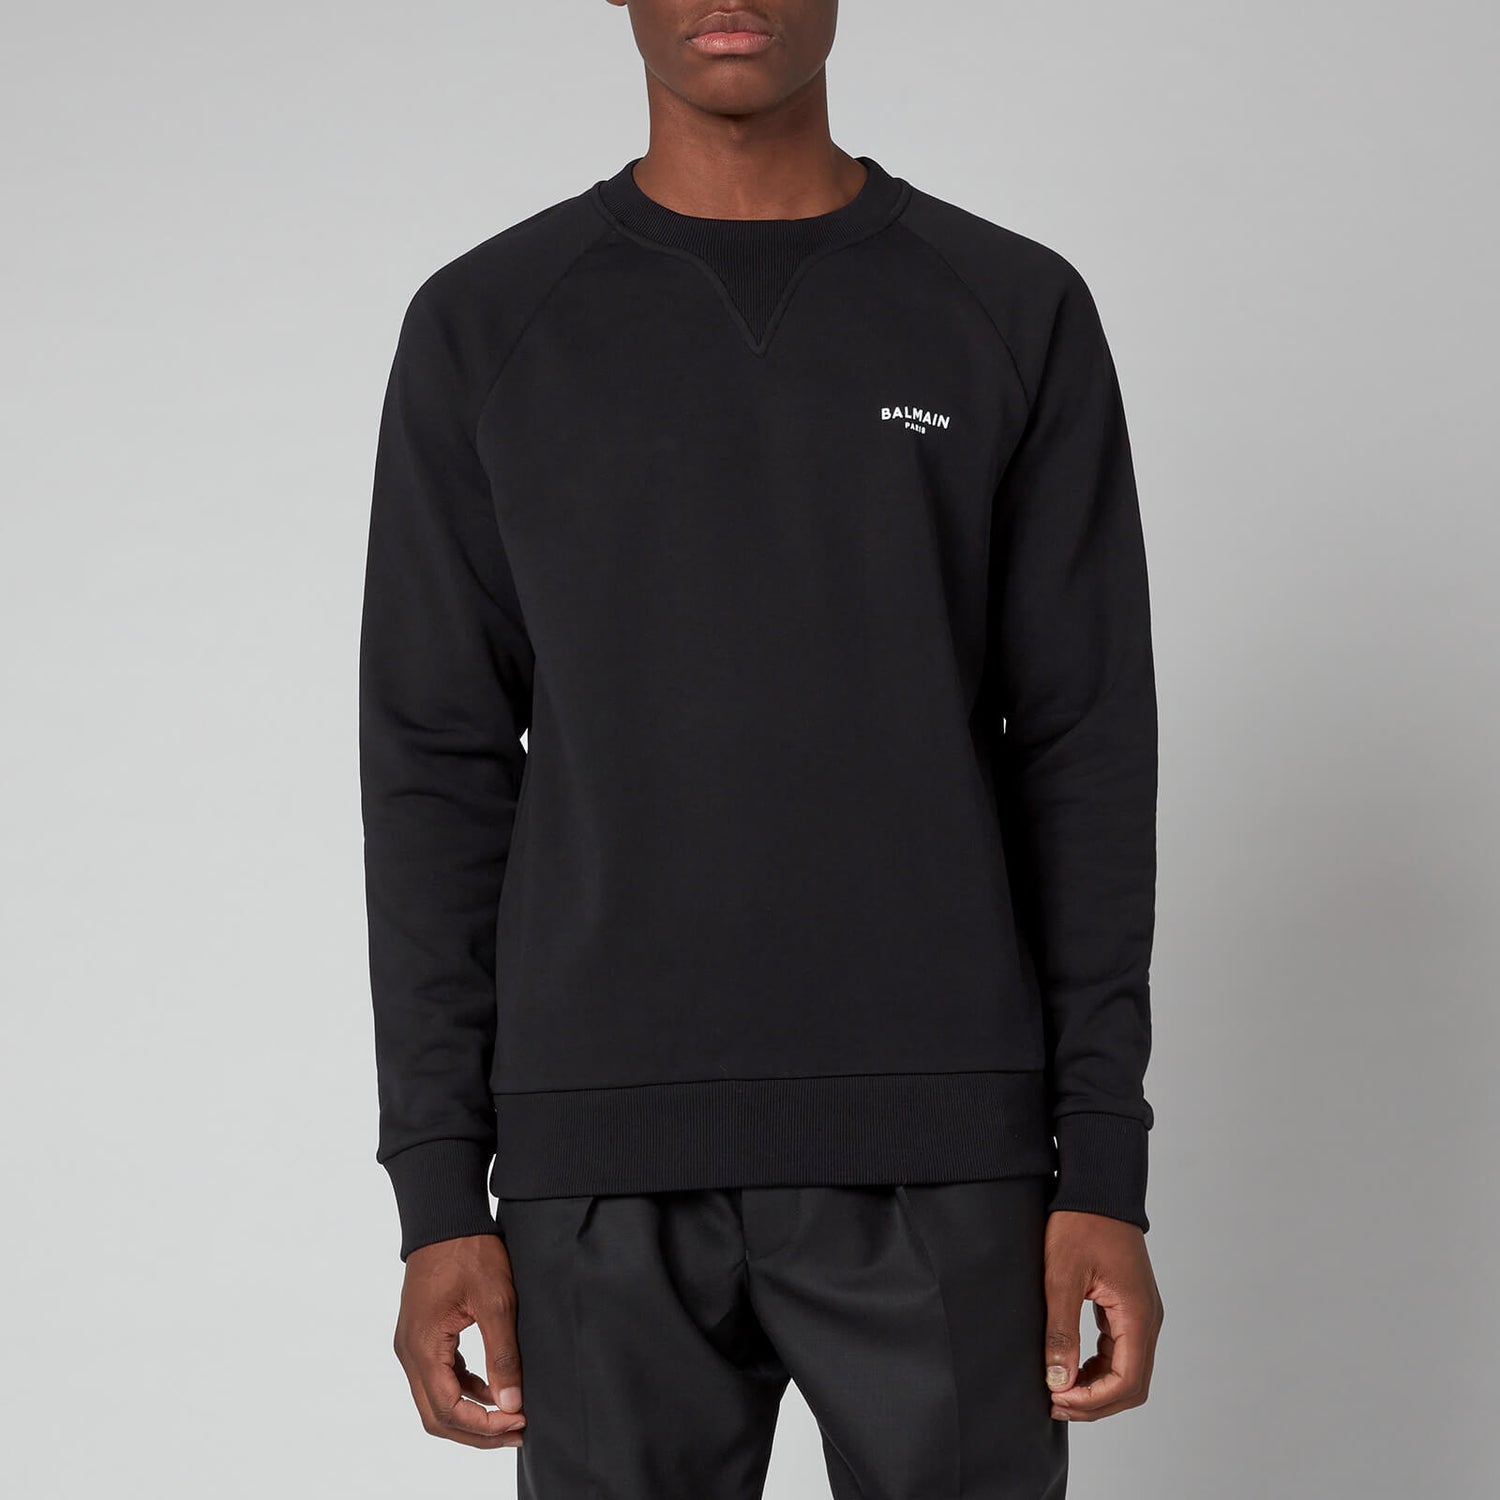 Balmain Men's Eco Design Flock Sweatshirt - Black/White